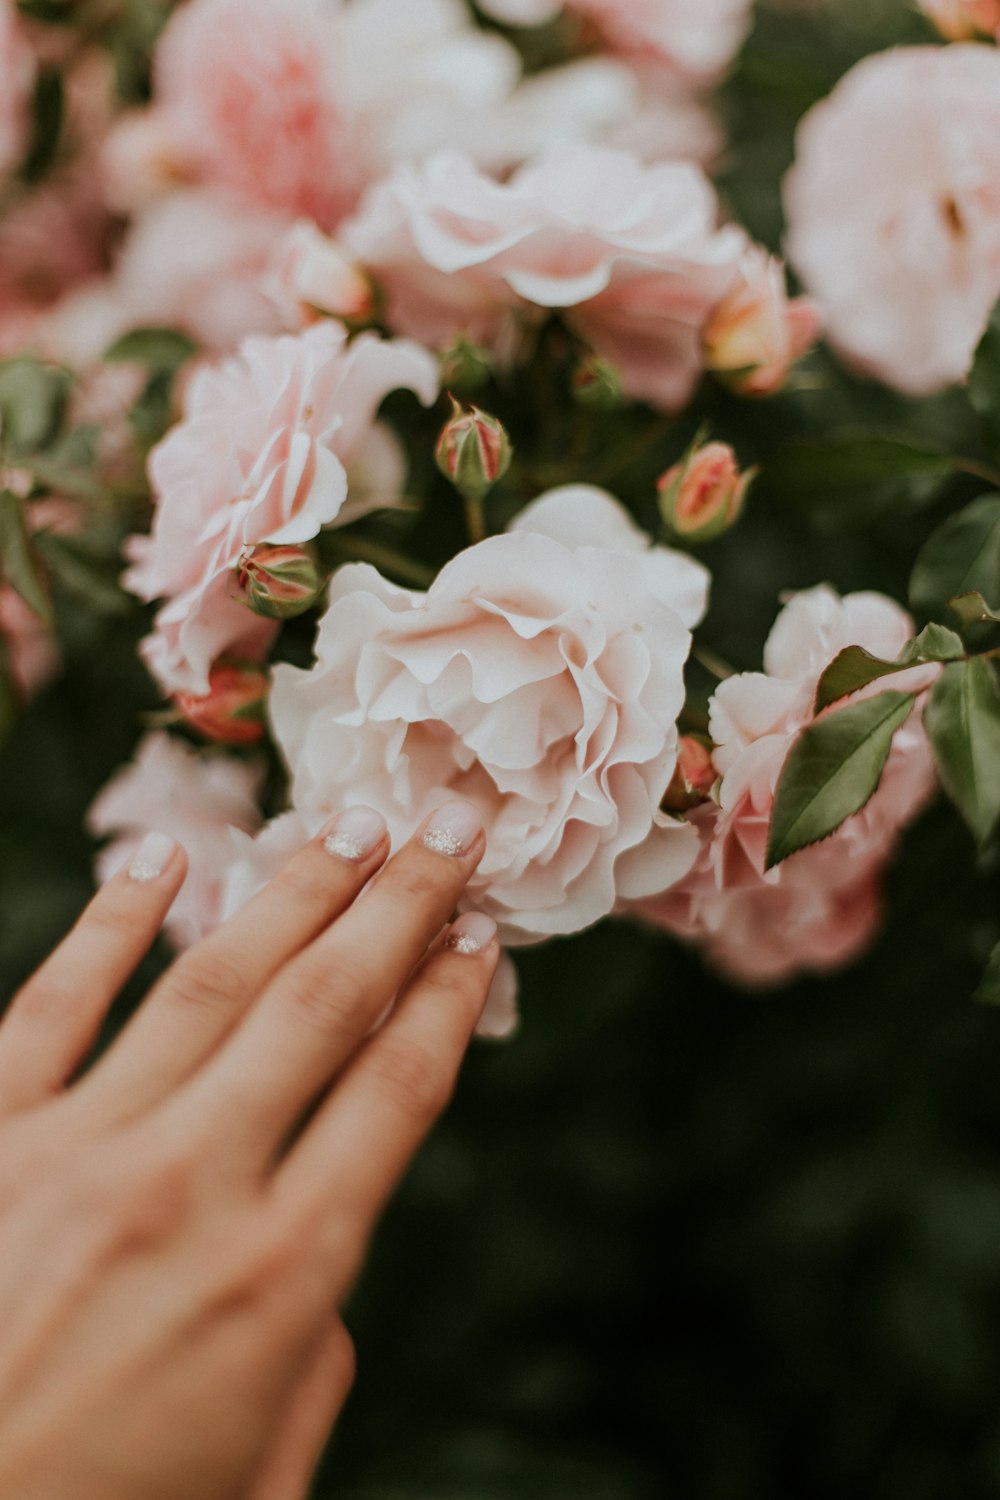 pessoa segurando flor de pétala branca e rosa agrupada